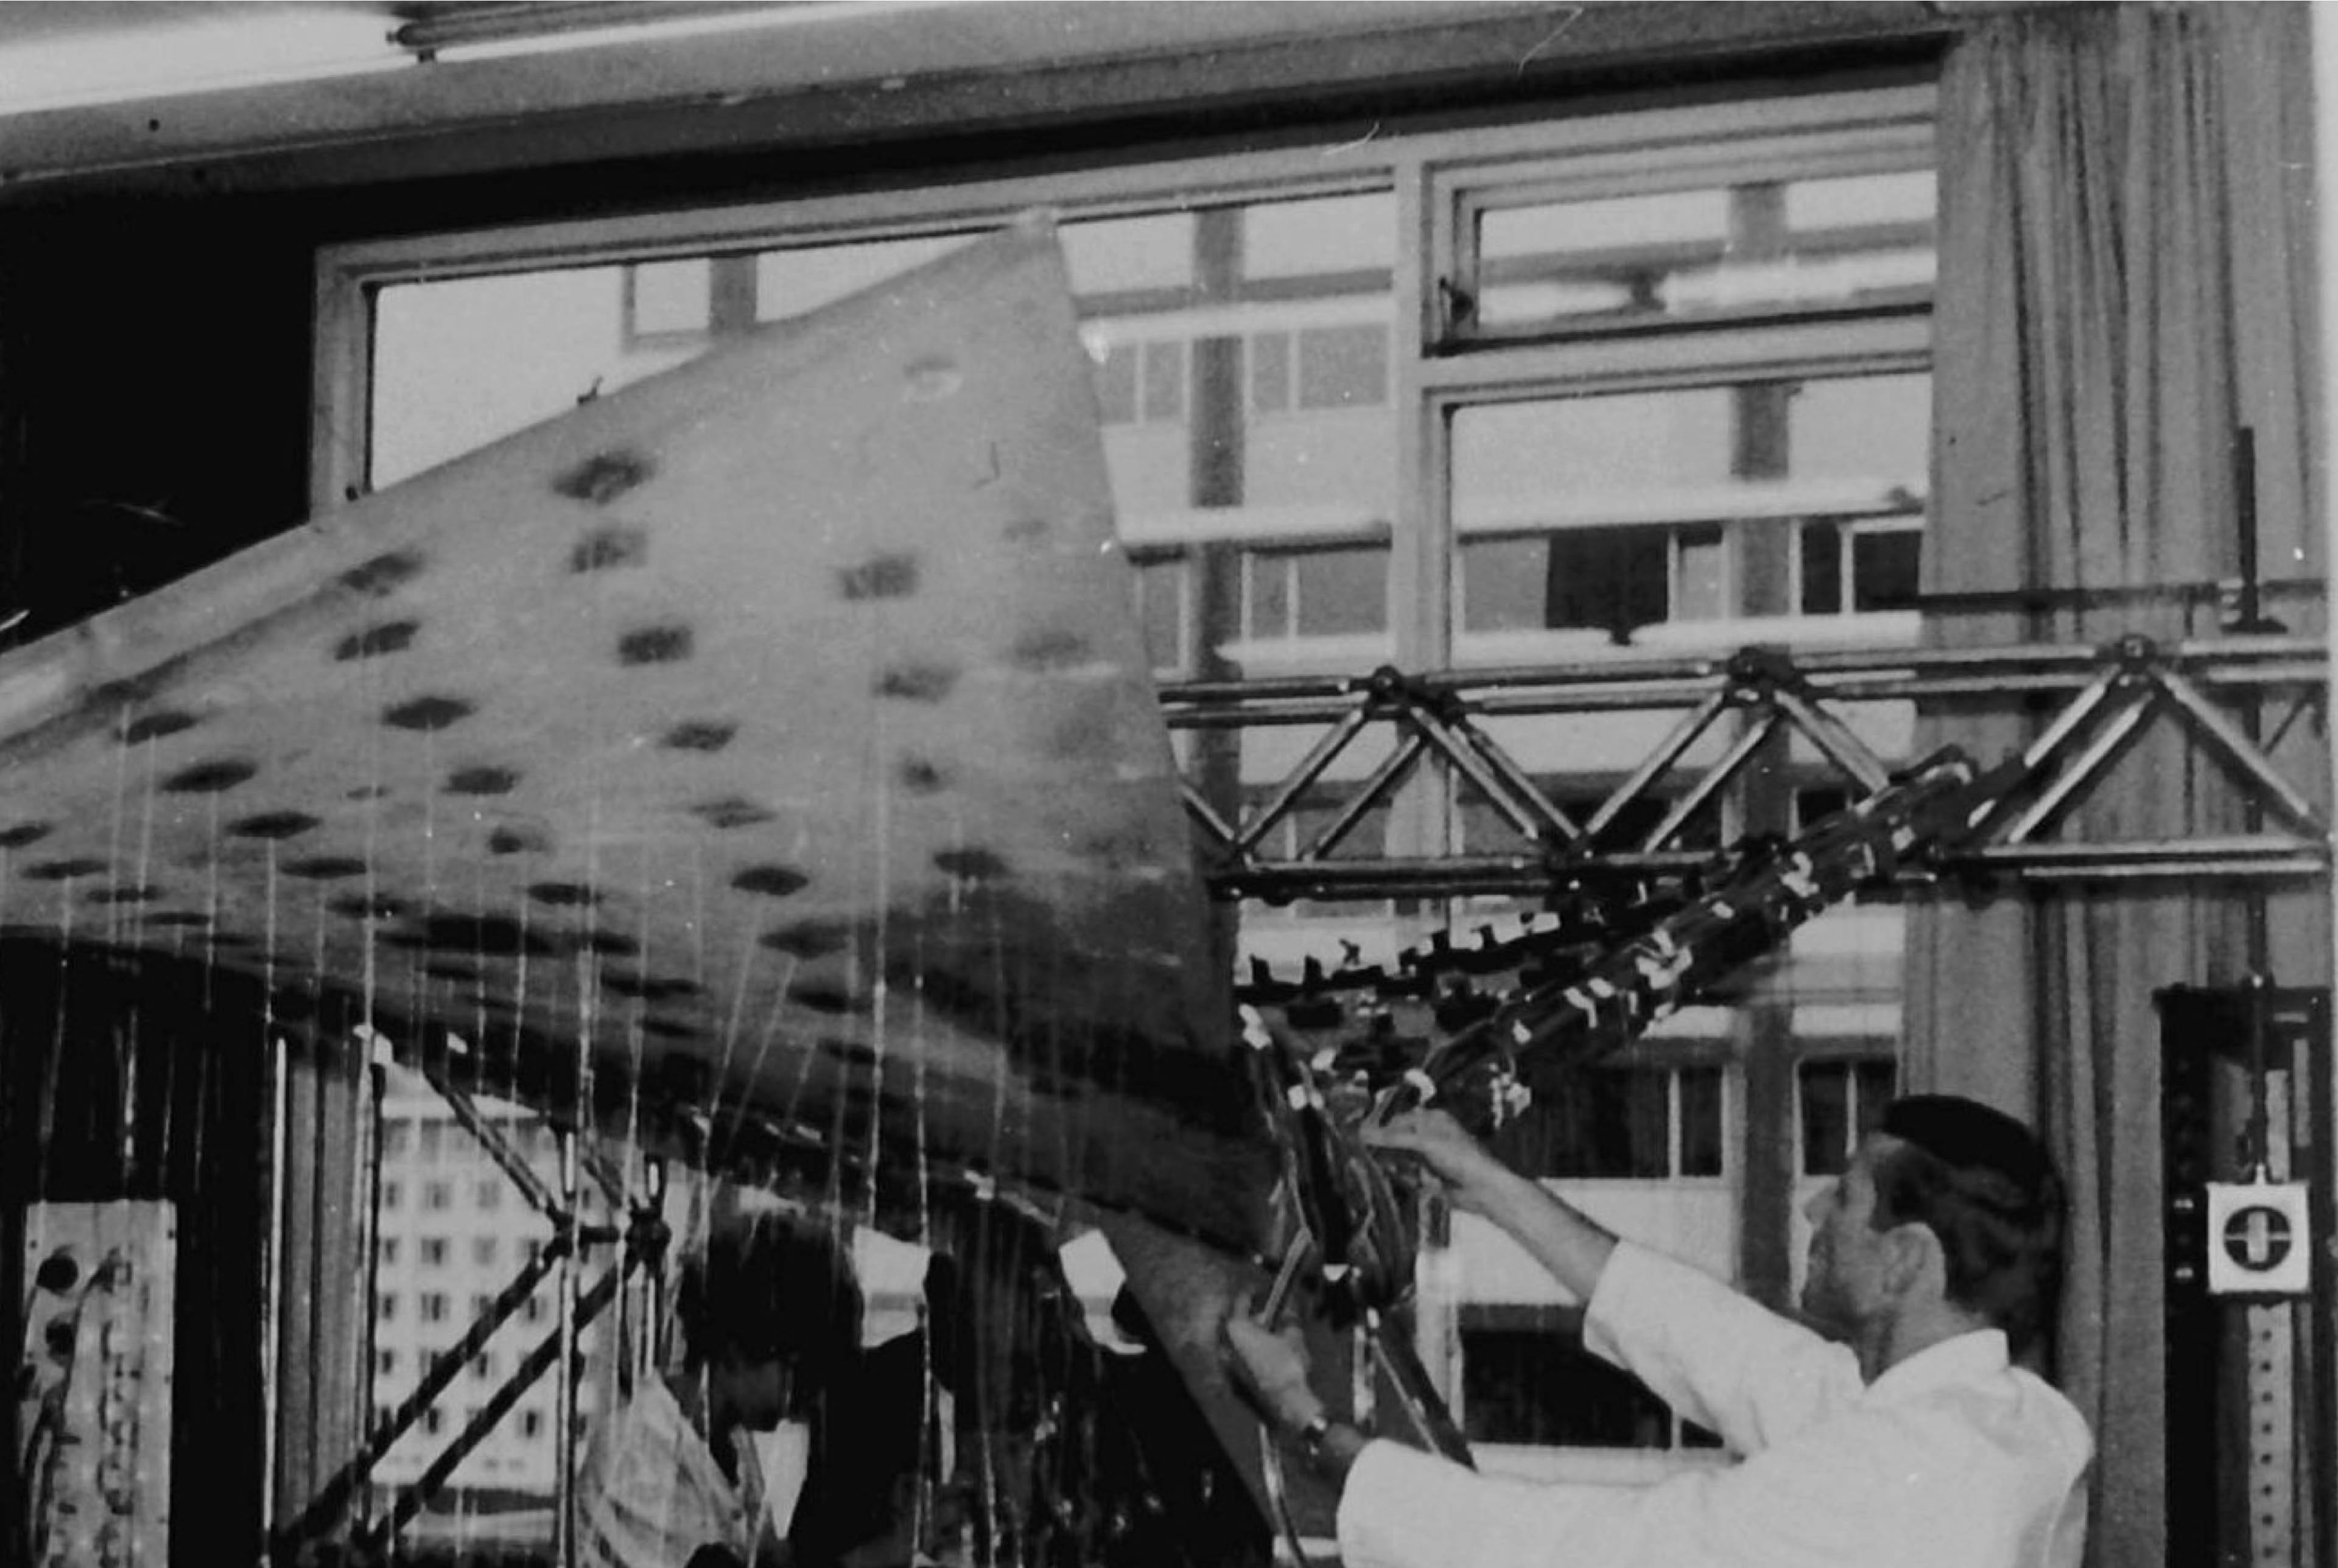 Spannungsoptische Modelluntersuchung des einzigartigen Schalendachs an der Universität Stuttgart – das Modell wird dort heute noch für Lehrzwecke genutzt.